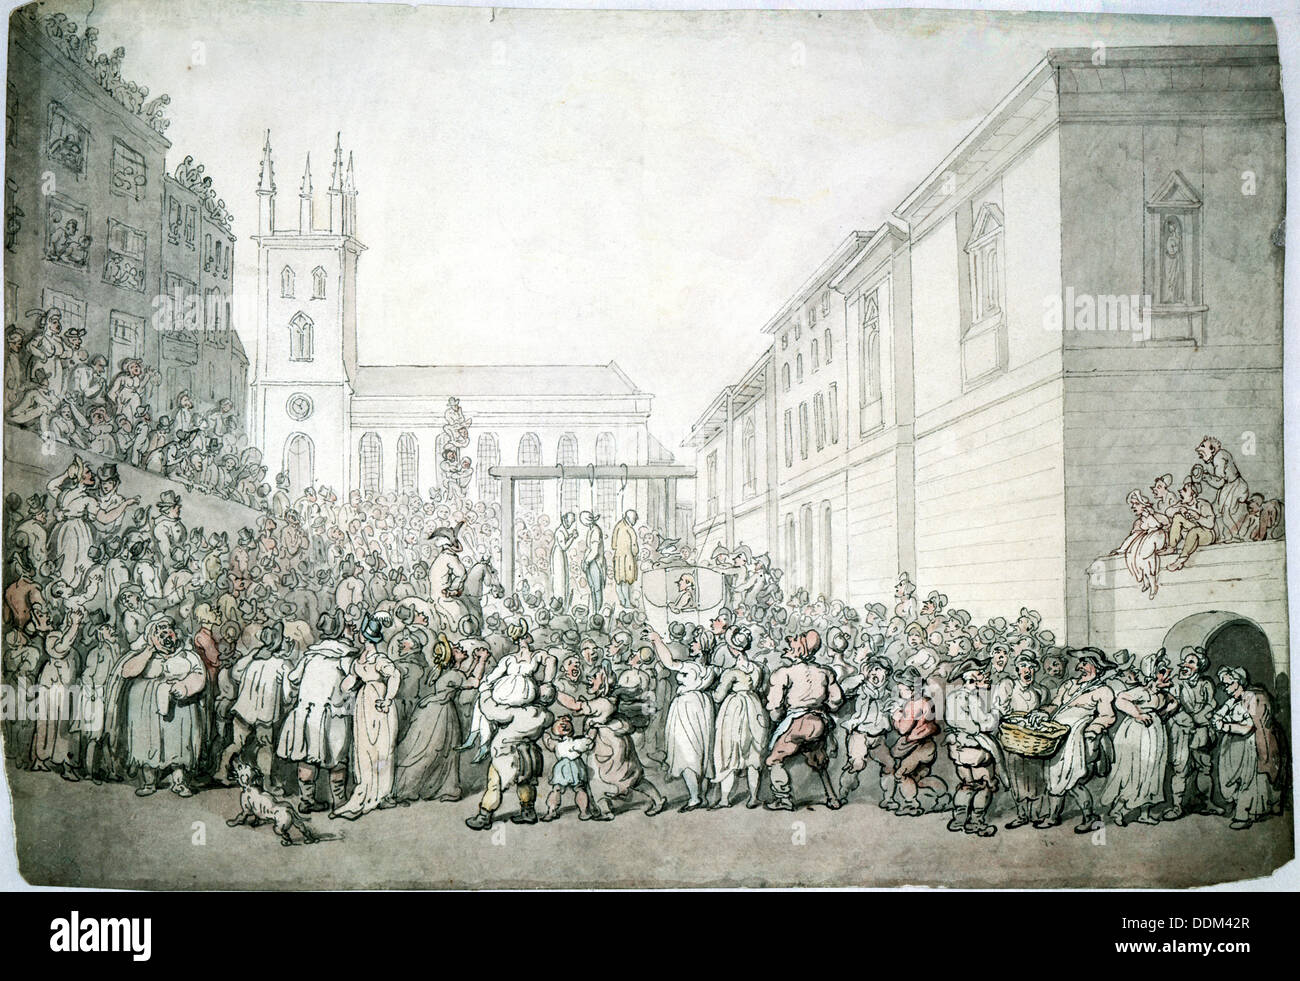 Une exécution publique à Newgate, Londres, fin du 18e siècle. Artiste : Thomas ROWLANDSON Banque D'Images